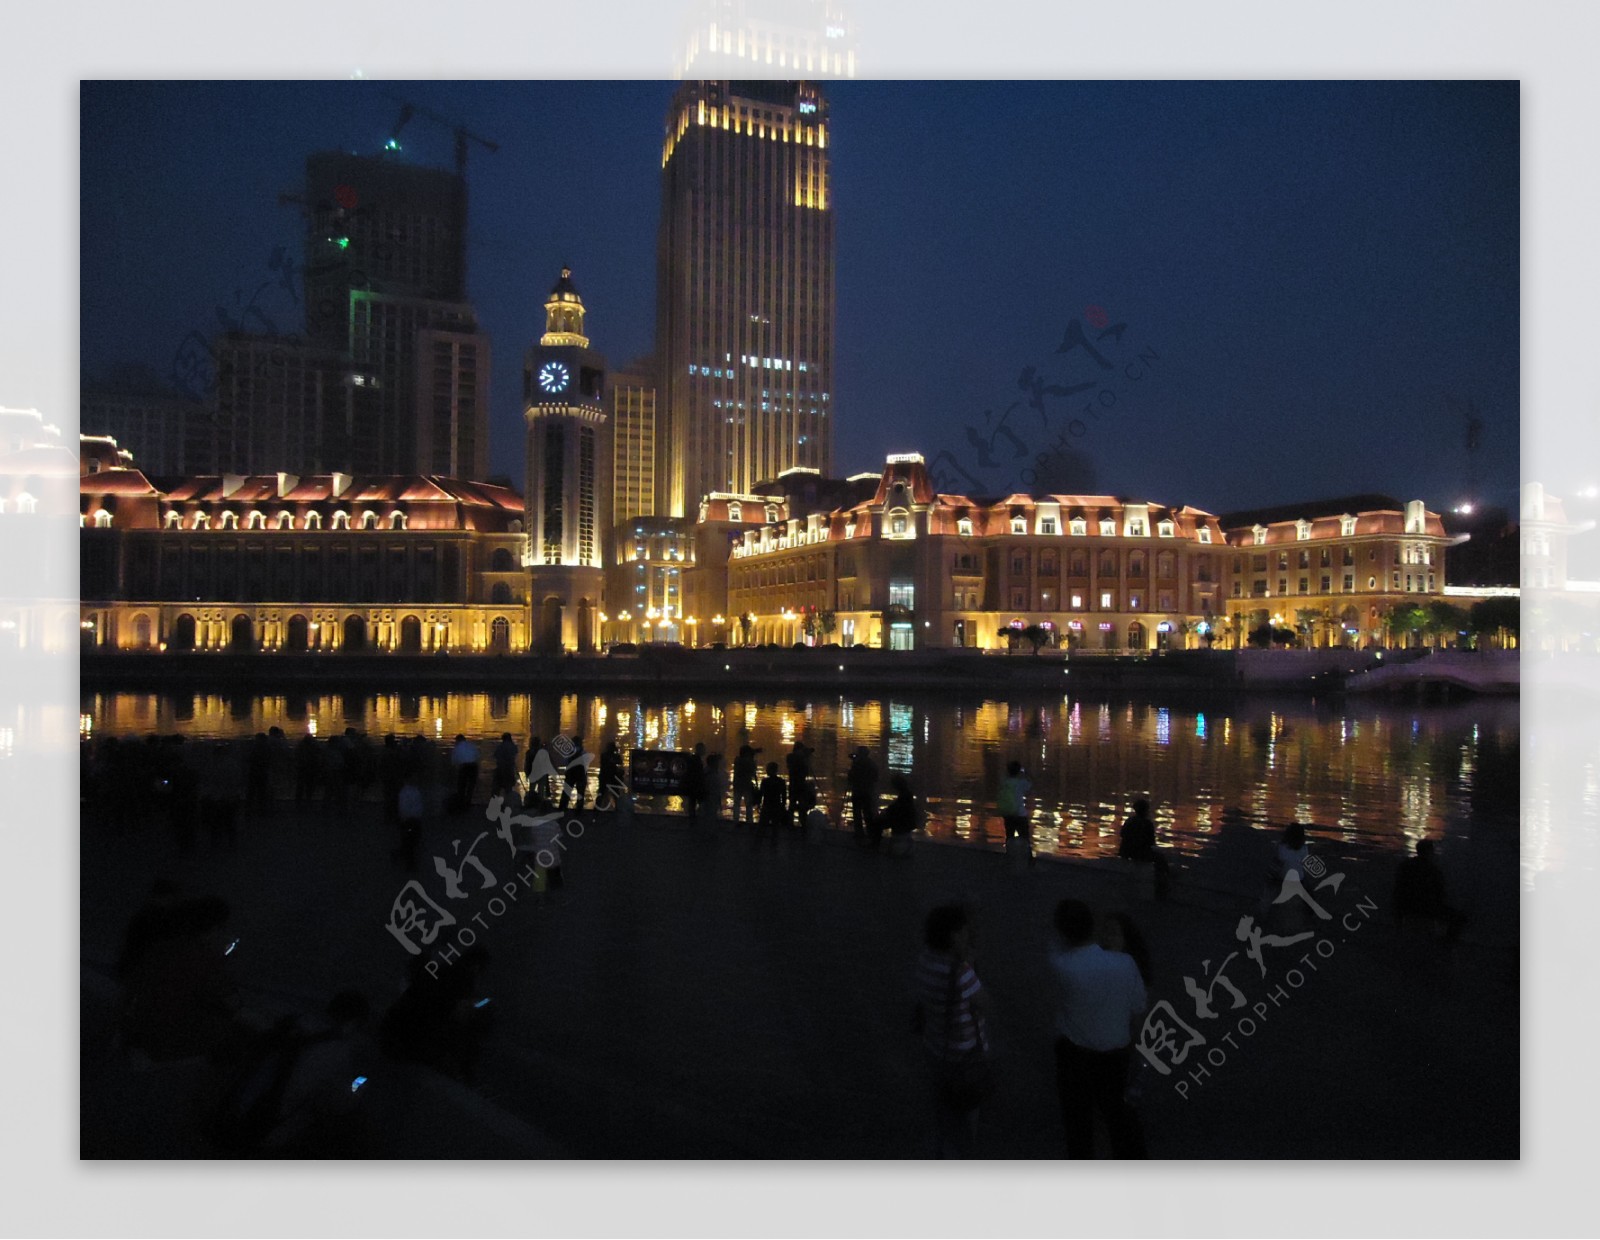 天津站前的景色图片